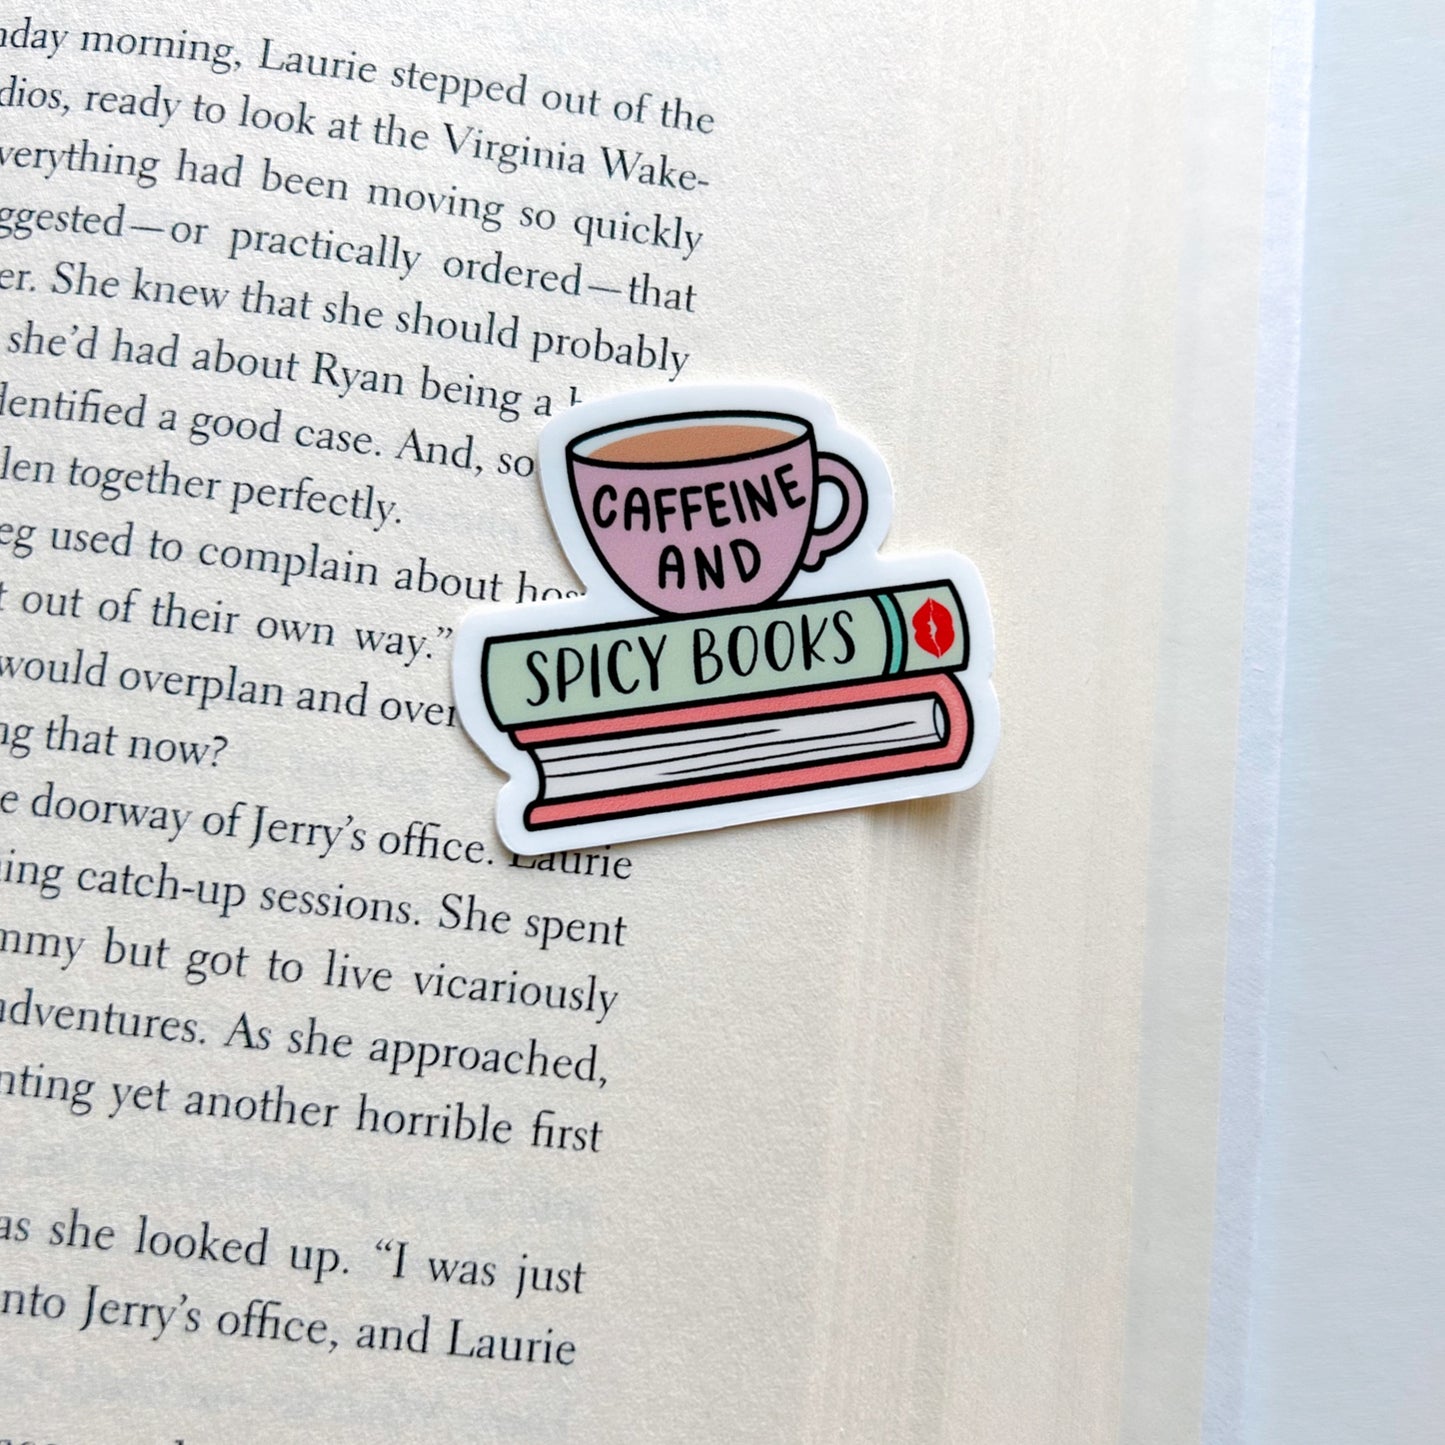 Caffeine and Spicy Books Sticker